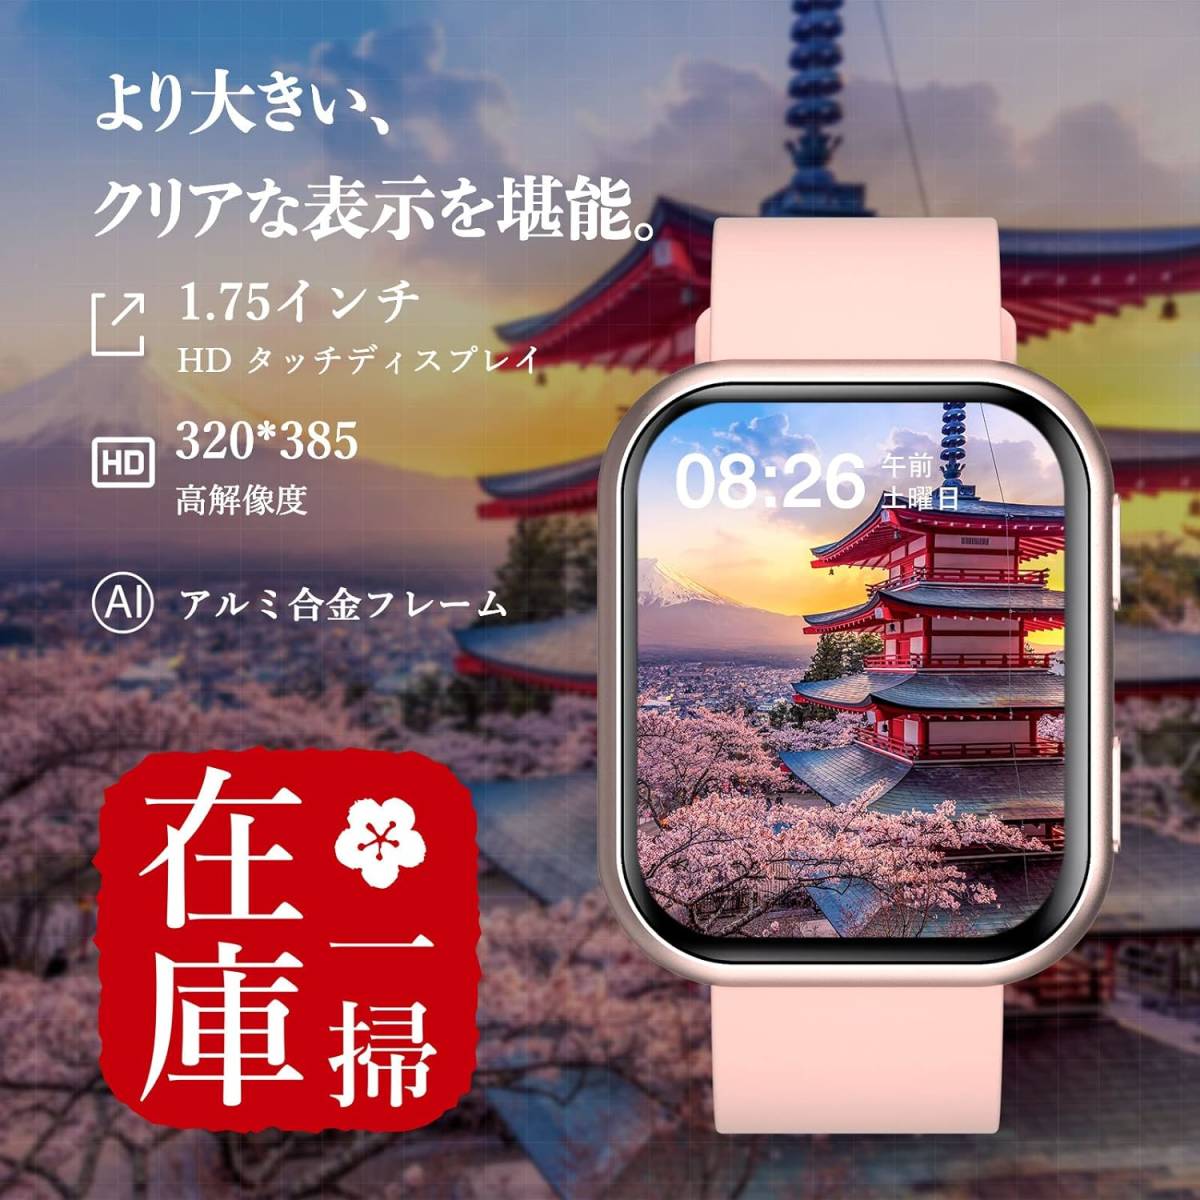 TouchElex ハーレー スマートウォッチ 1.75インチ - 腕時計(デジタル)